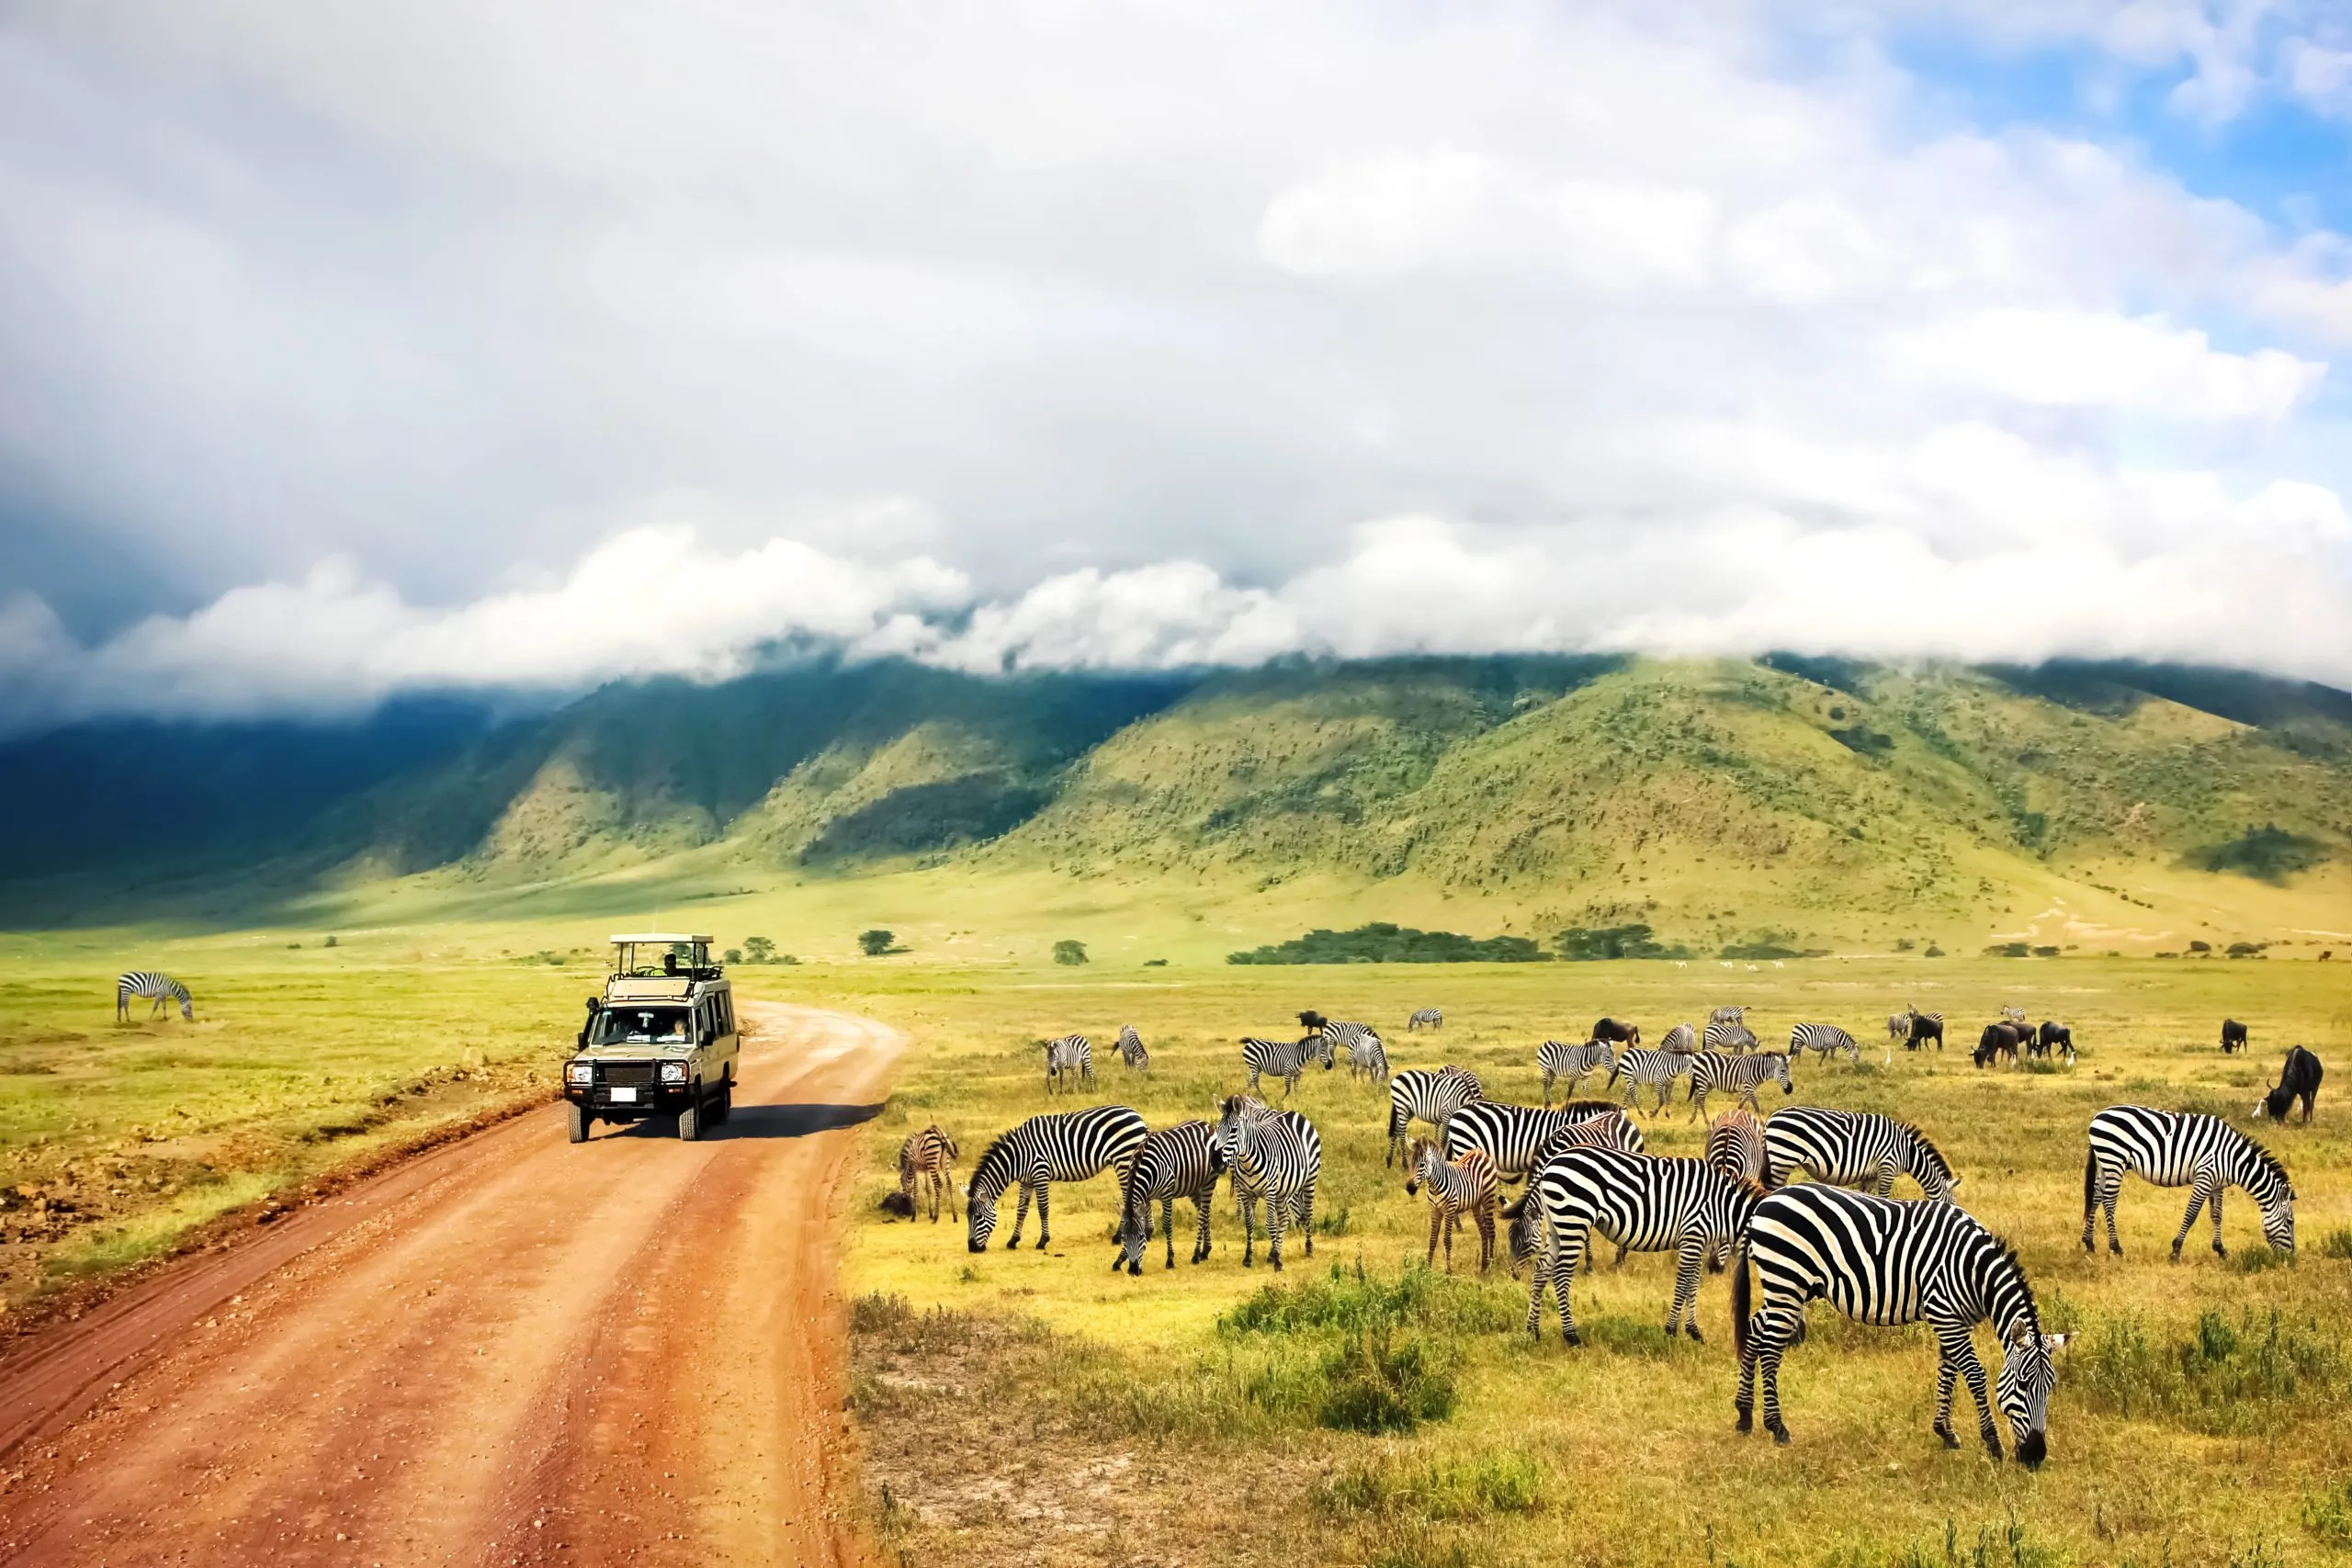 Natureza selvagem de África. Zebras contra montanhas e nuvens. Safari no parque nacional da cratera de Ngorongoro. Tanzânia.